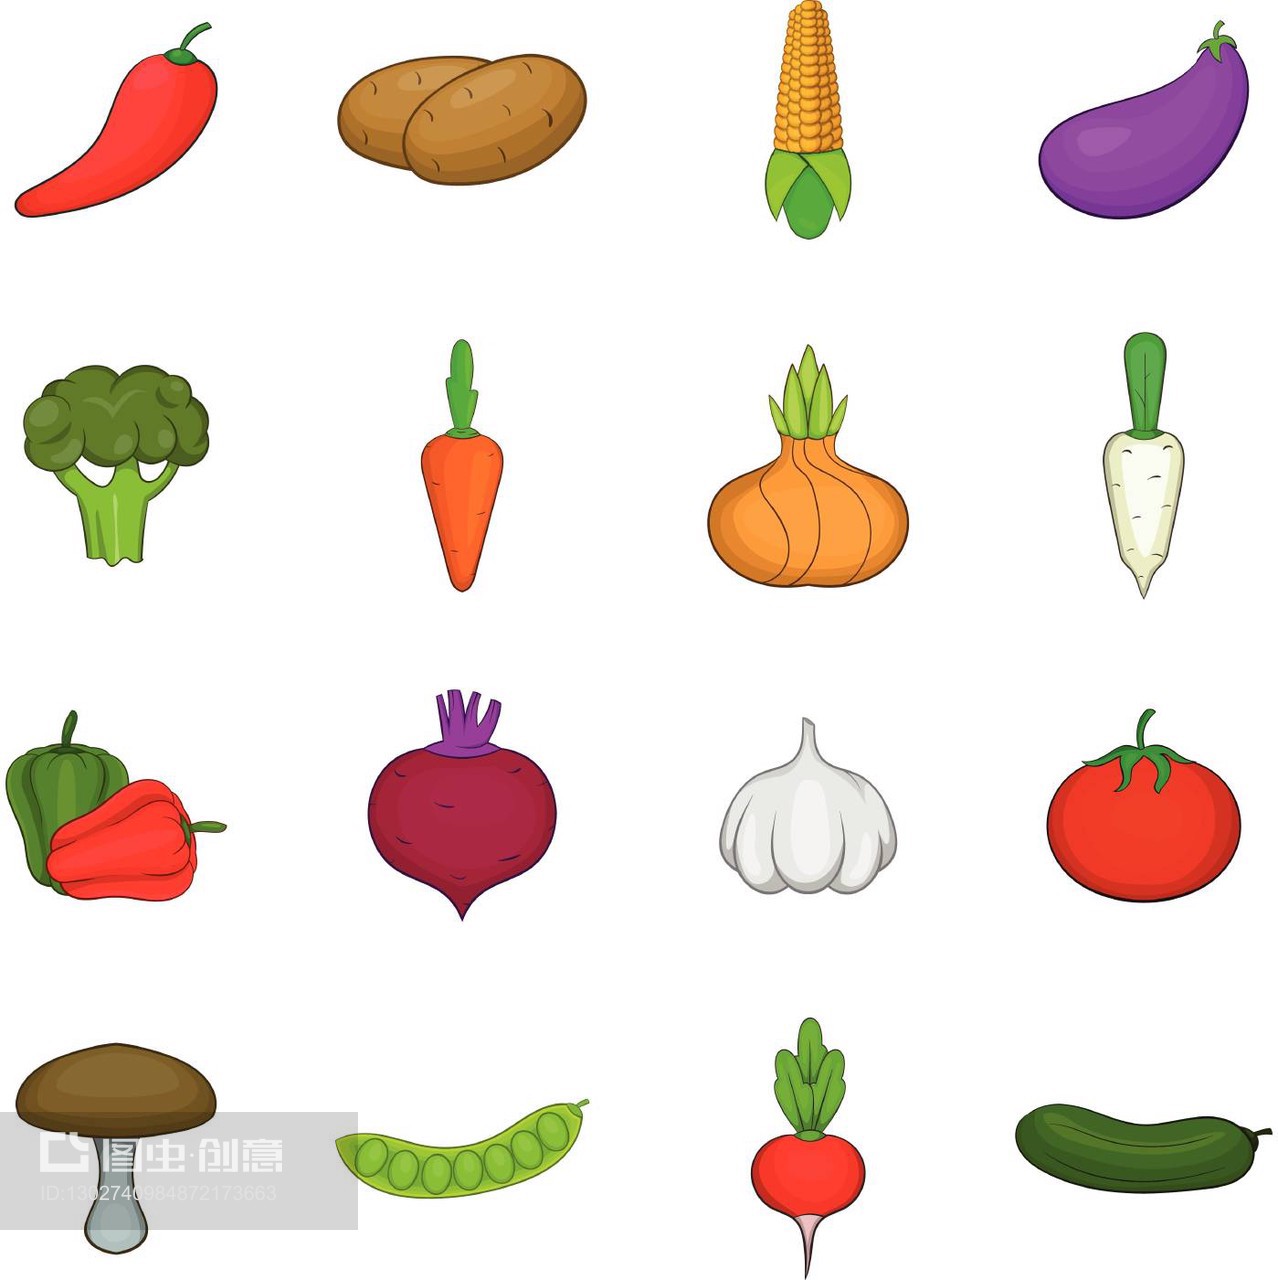 蔬菜工作室图标集,卡通风格